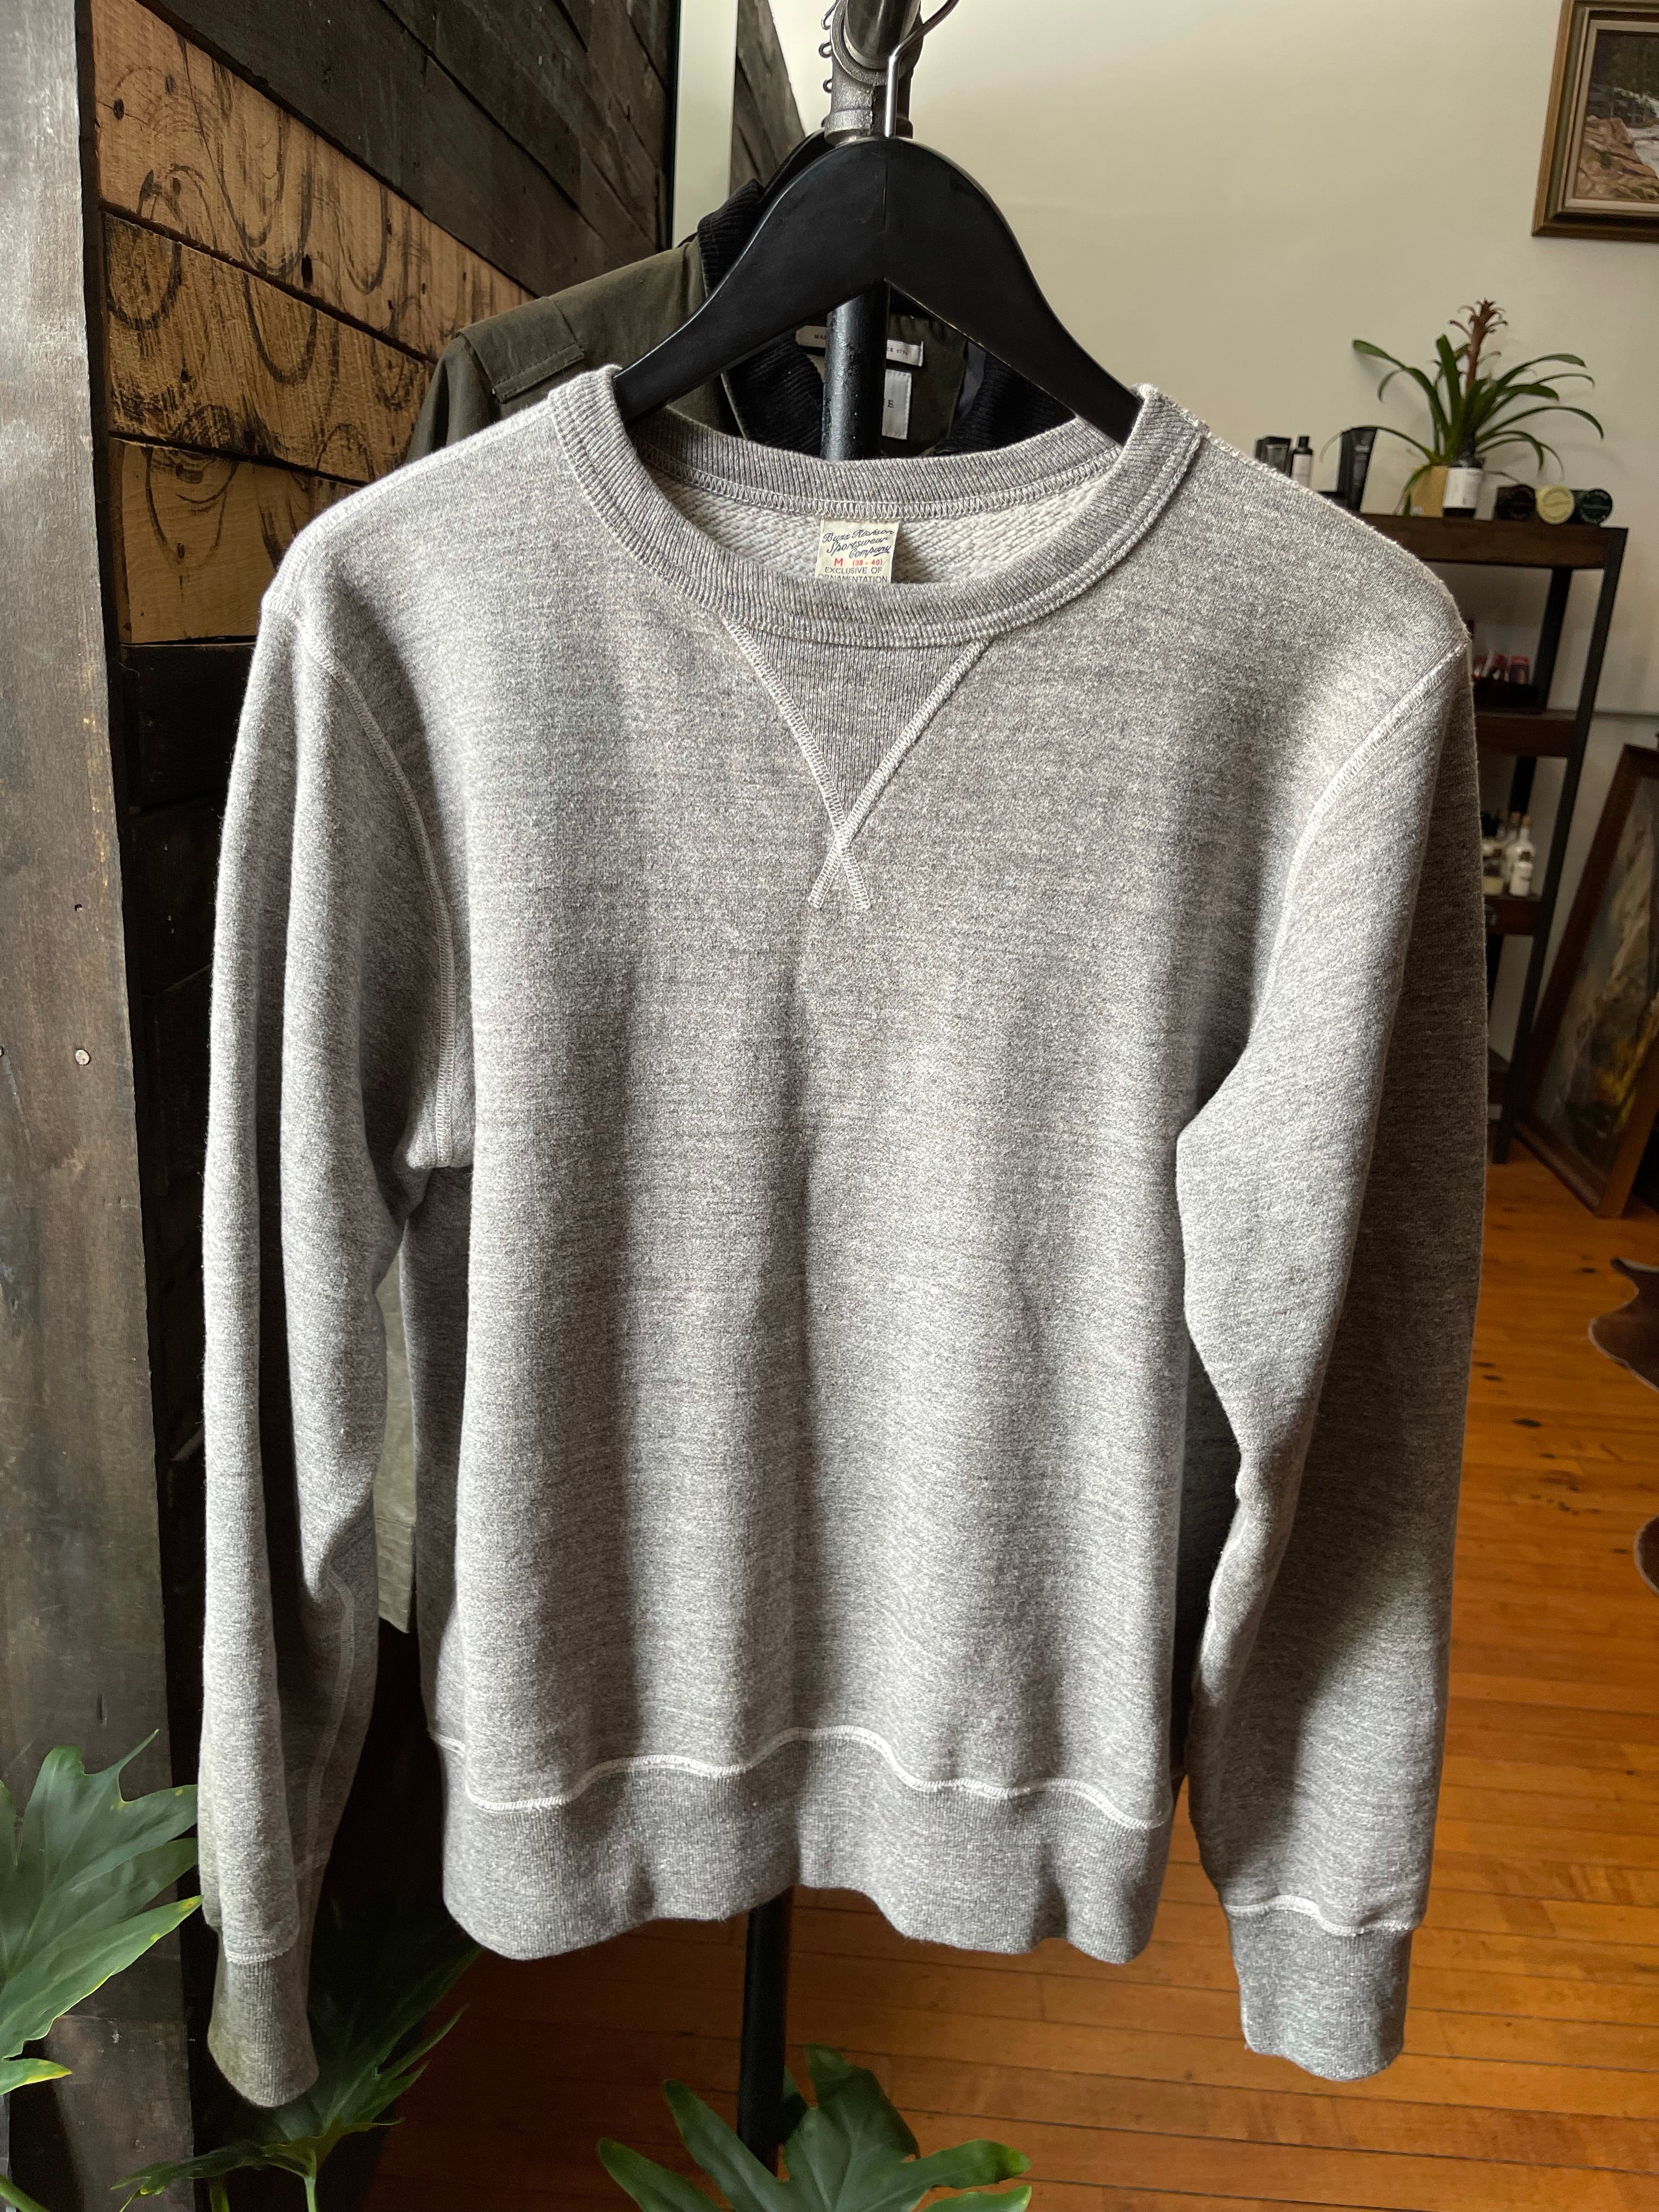 Gently Used Buzz Rickson's Loopwheel Sweatshirt - Heather Grey - Medium